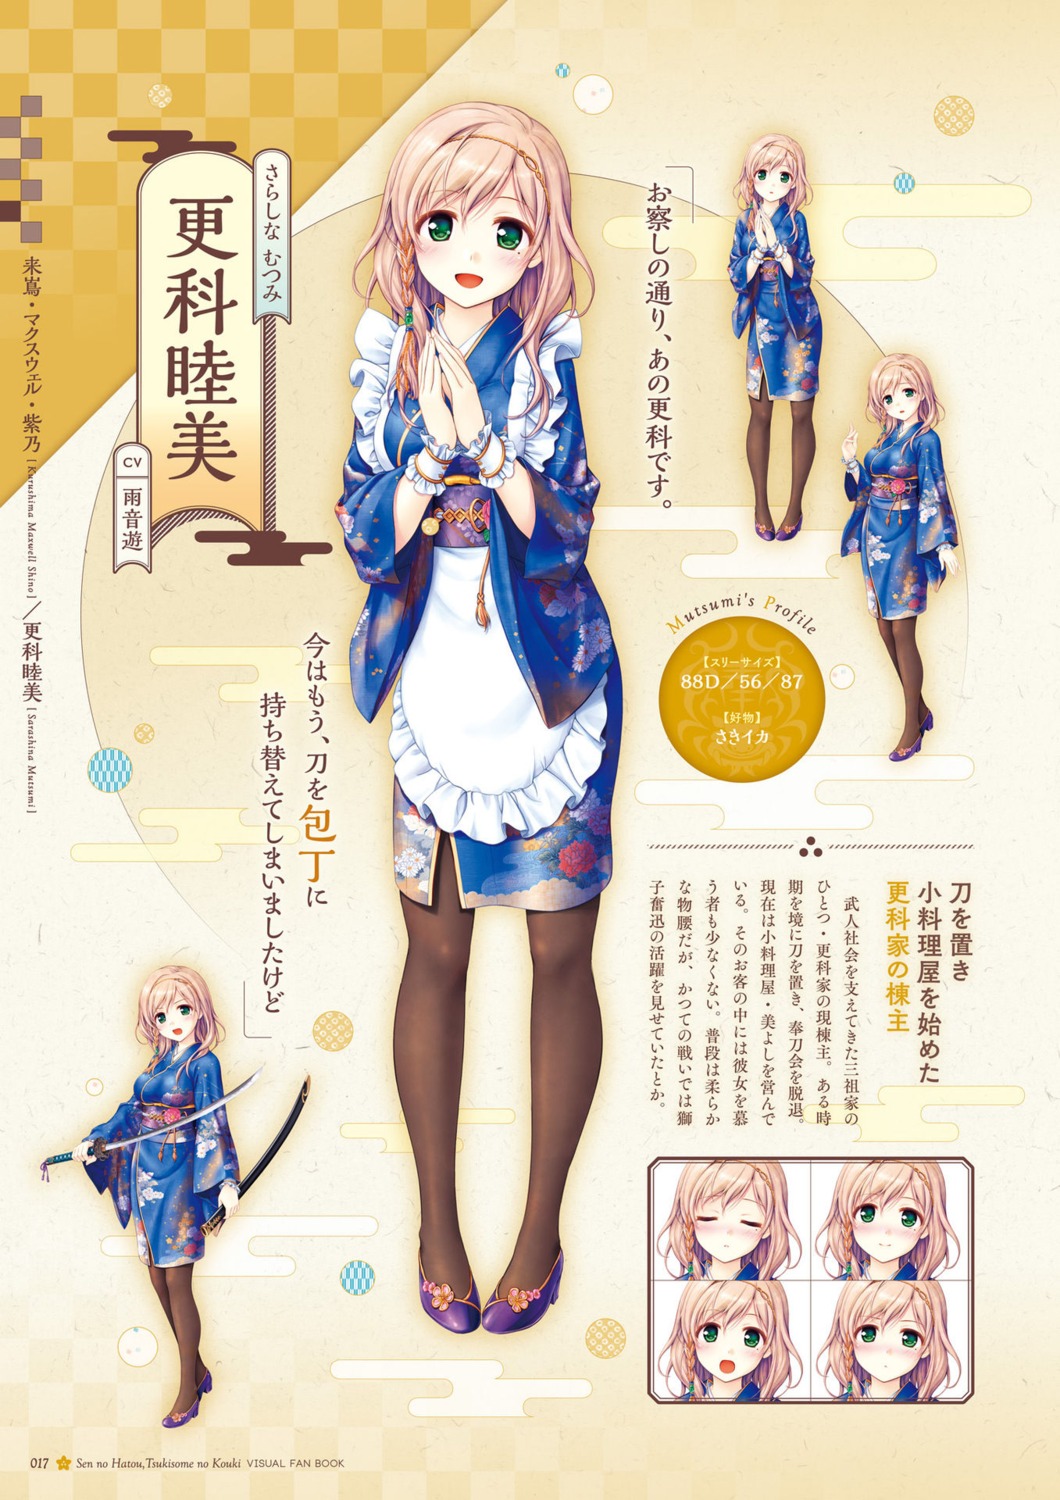 august digital_version dress natsuno_io pantyhose sarashina_mutsumi sen_no_hatou_tsukisome_no_kouki sword